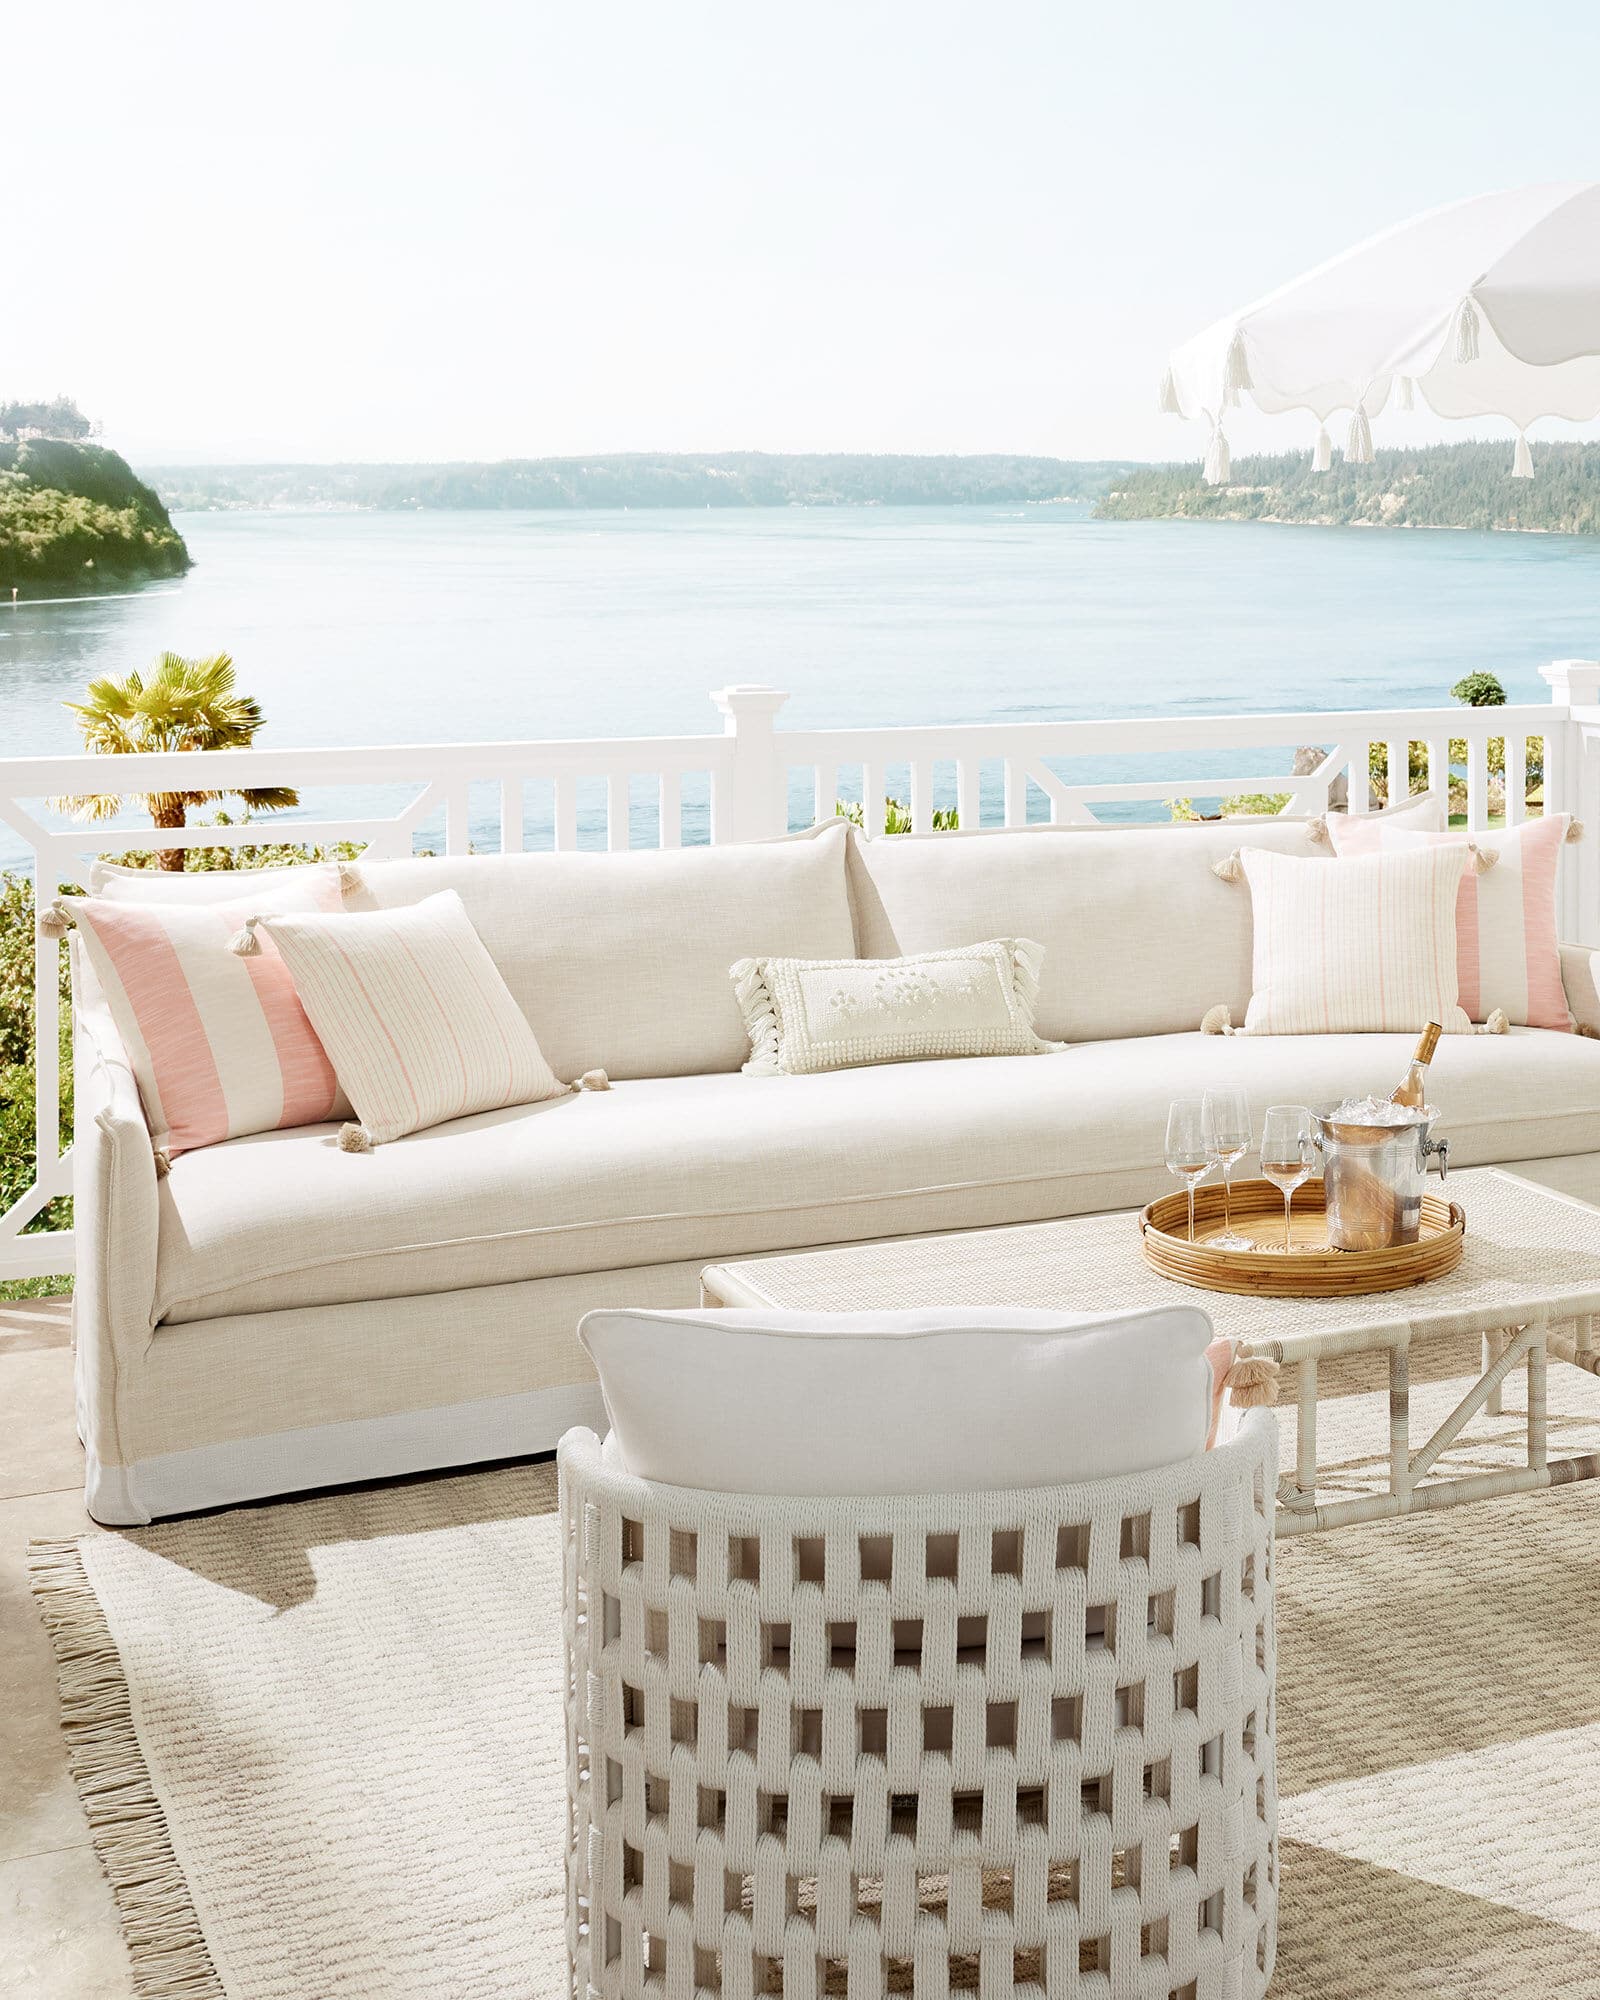 Serena and Lily outdoor living room - porch - porch design - porch design ideas - patio - beach living - beach house - white sofa - white outdoor sofa